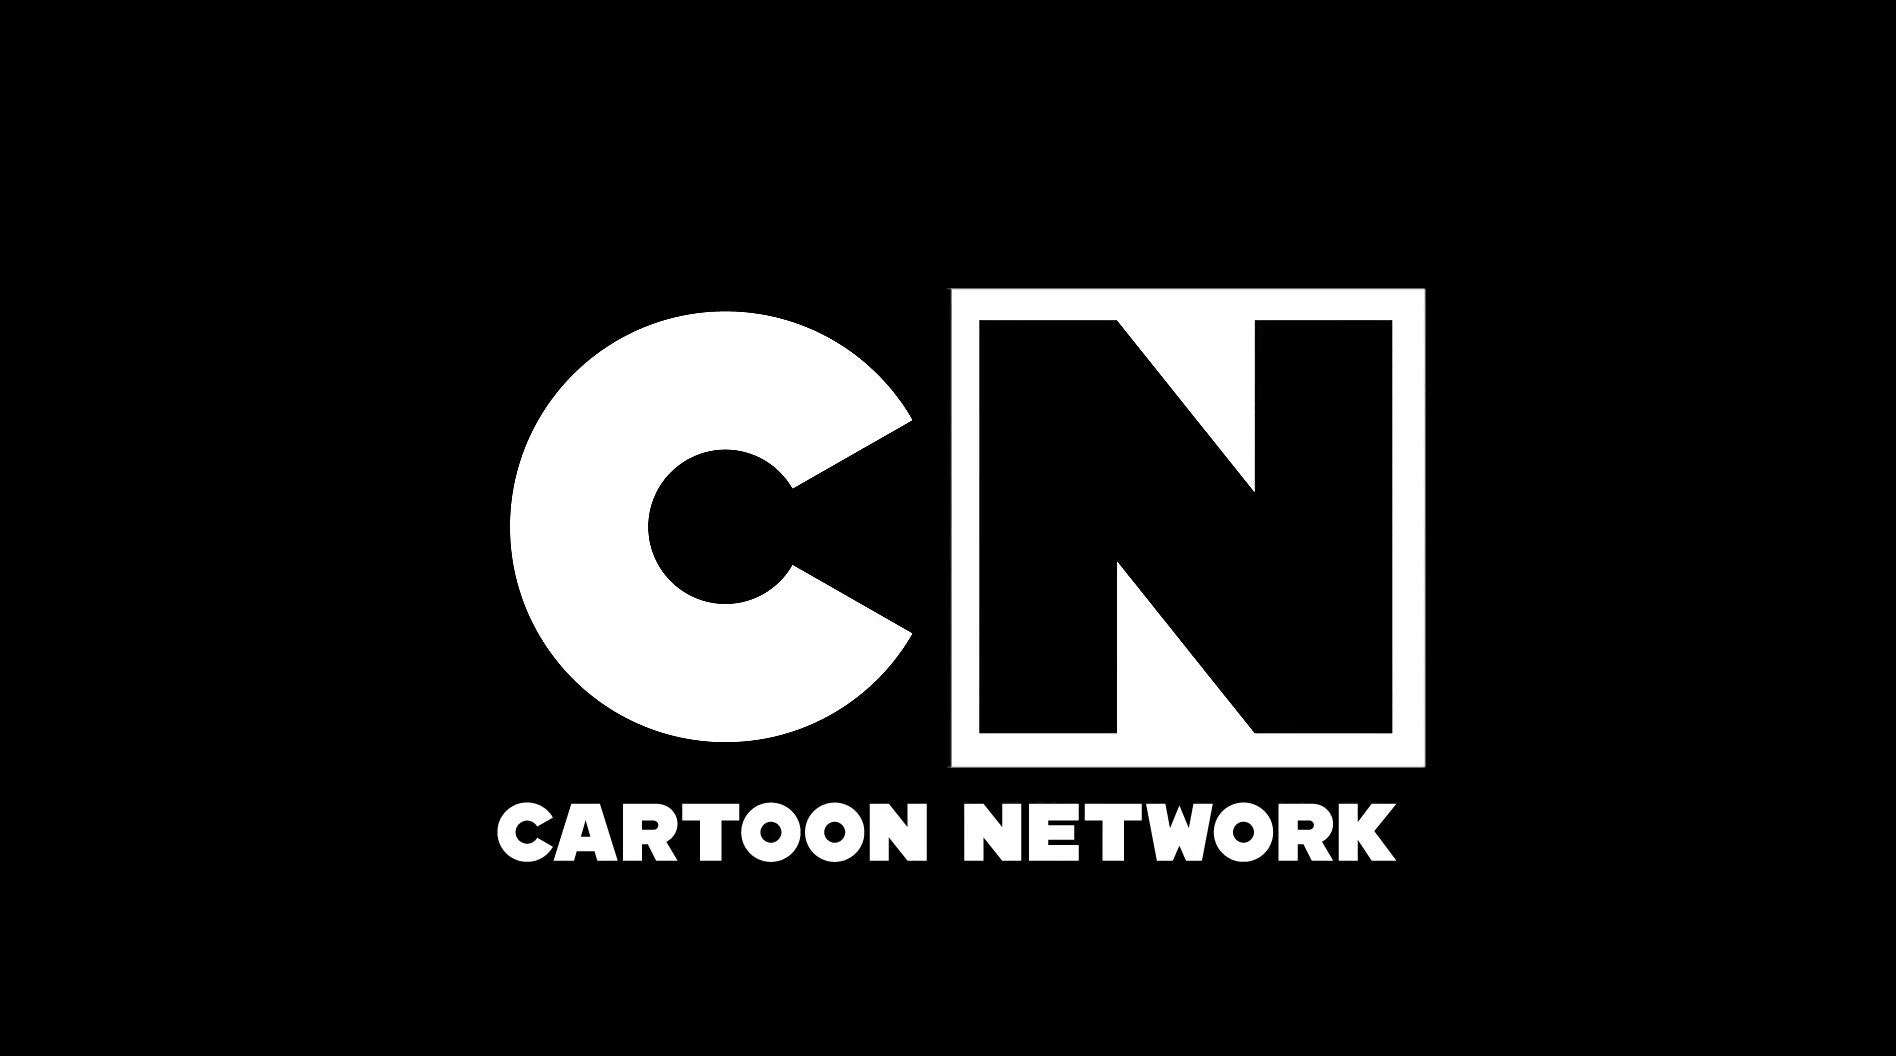 Pelo sétimo ano, Cartoon Network é eleito o canal mais visto da TV paga